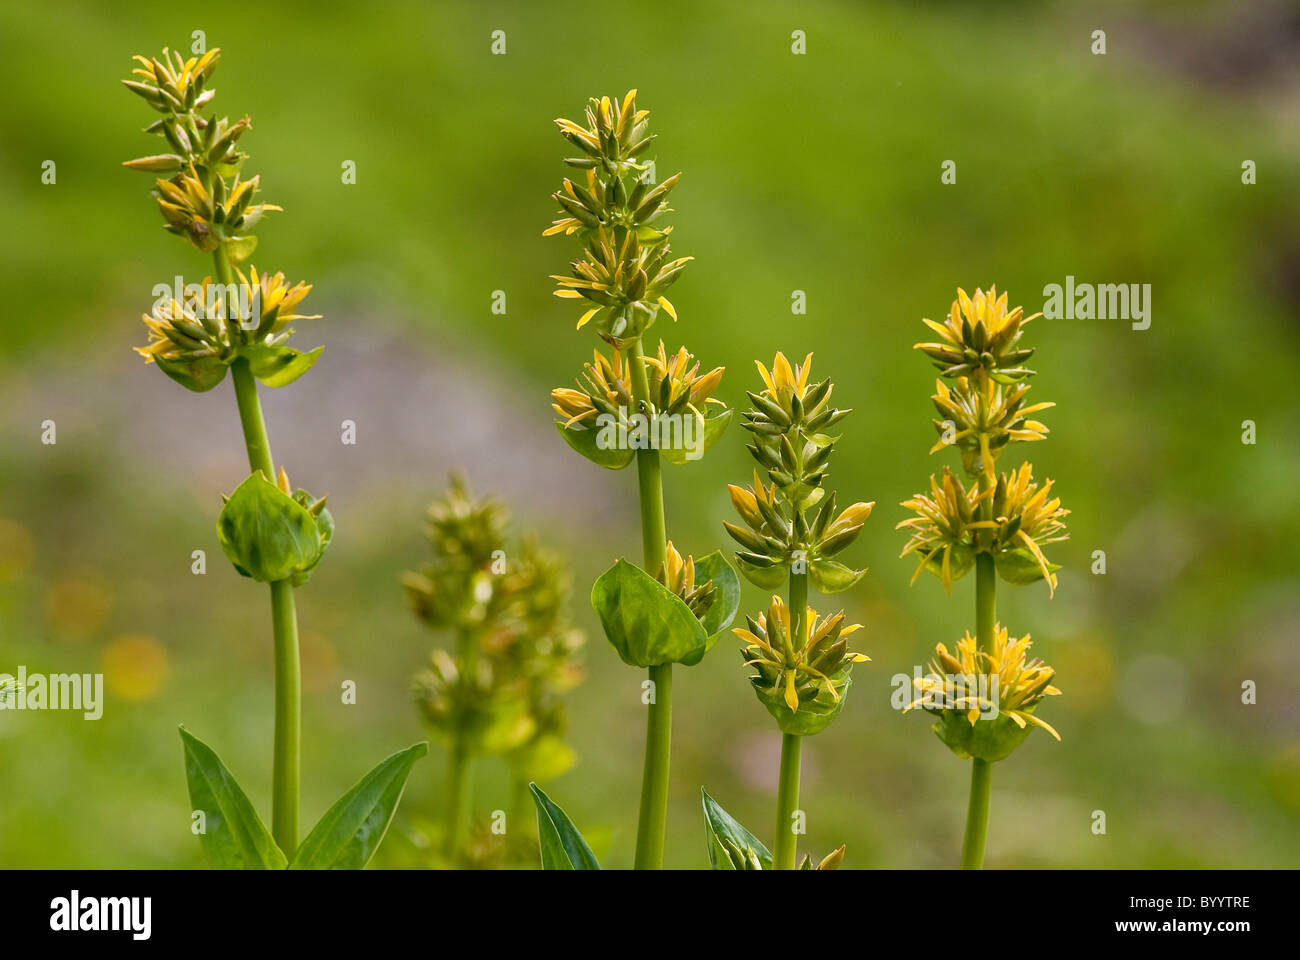 Great Yellow Gentian (Gentiana lutea), flowering plants. Stock Photo